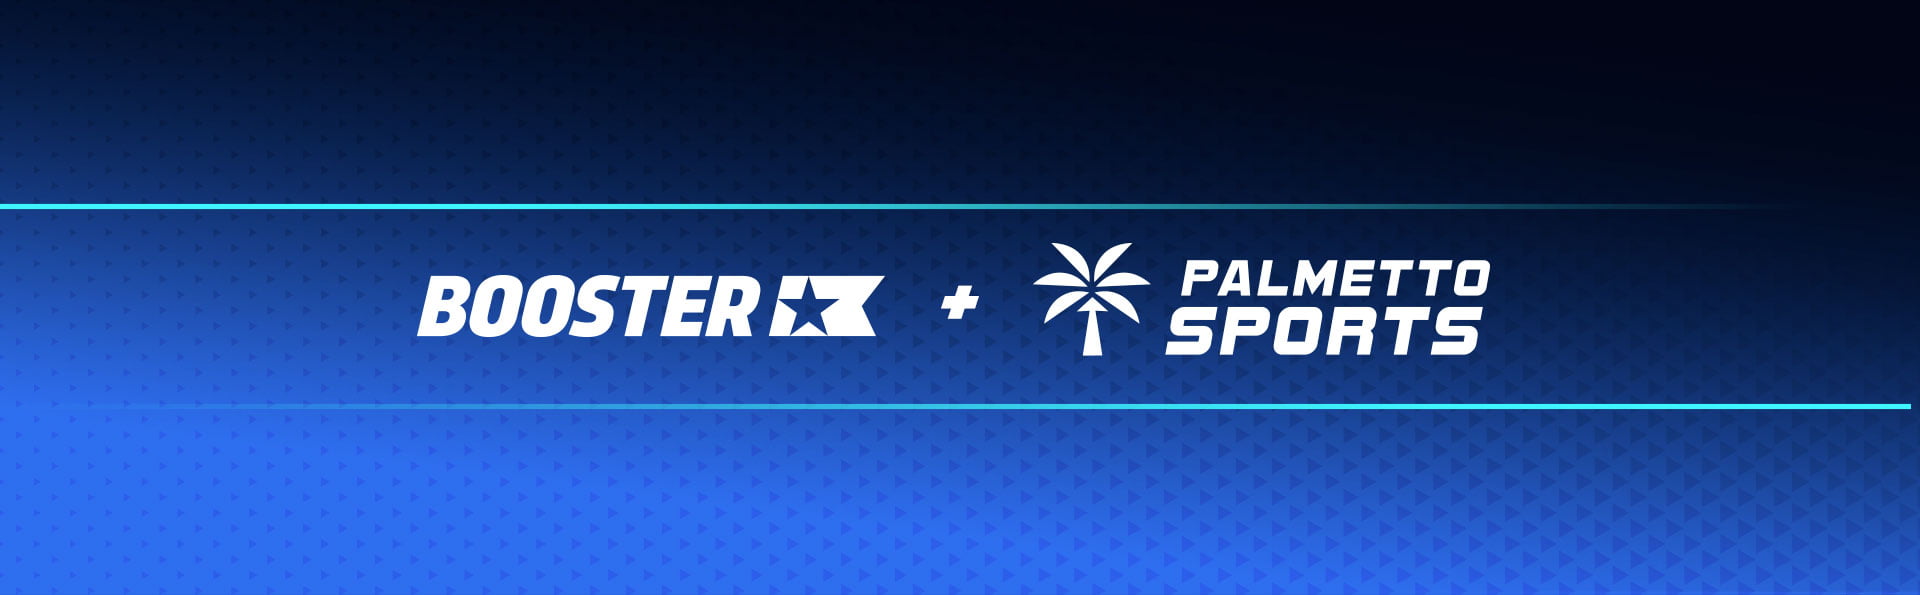 Booster + Palmetto Sports